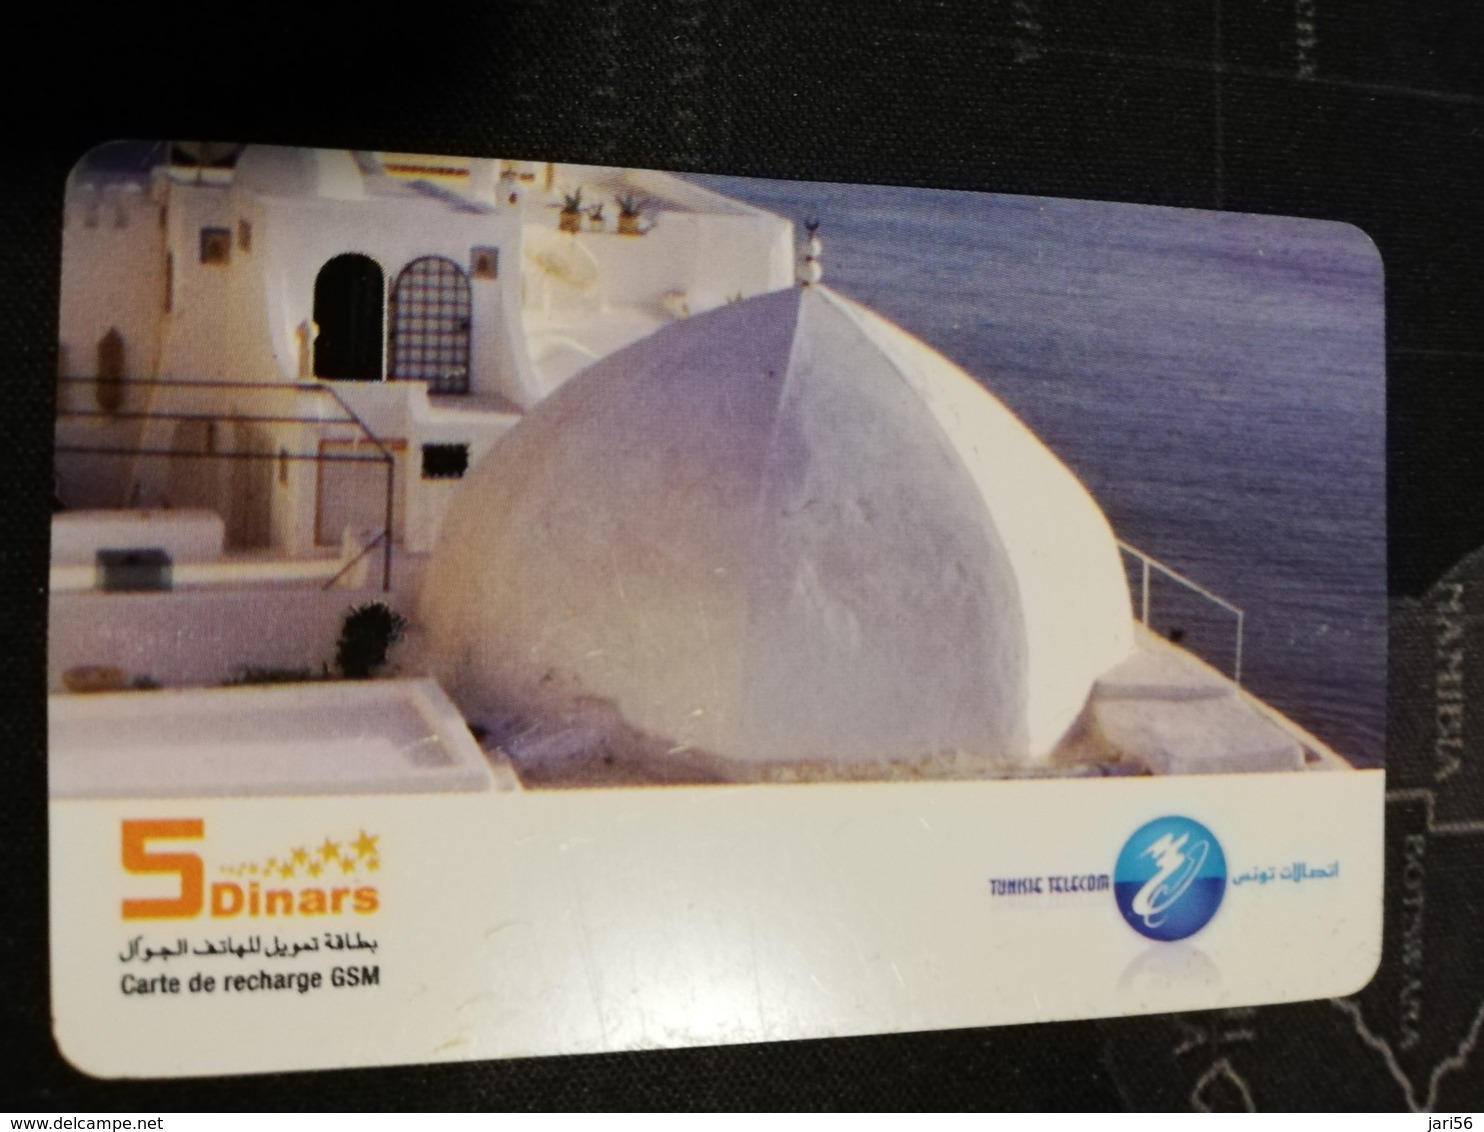 TUNESIA   PREPAID   5 DINAR    CARD     FINE USED    ** 1606** - Tunesien